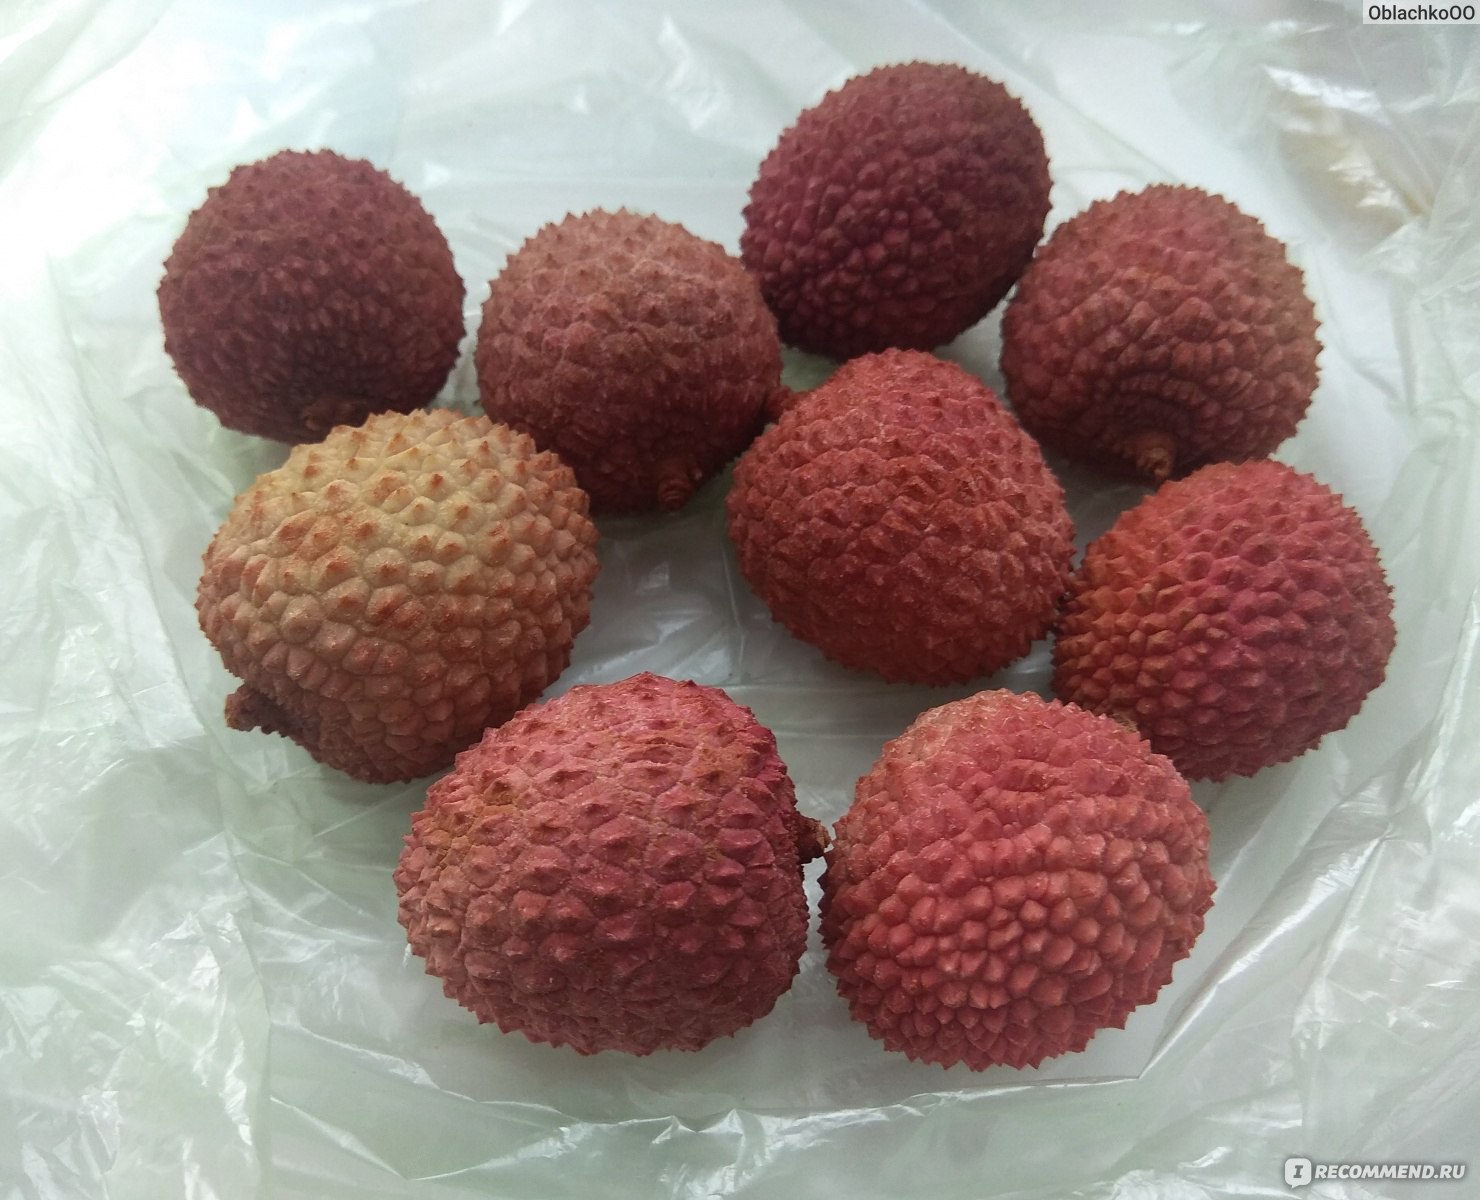 Личи фрукт домашних условиях. Тайские фрукты личи. Личи фрукт фото полезные. Личи для диабетиков. Пластмассовые ягоды личи.